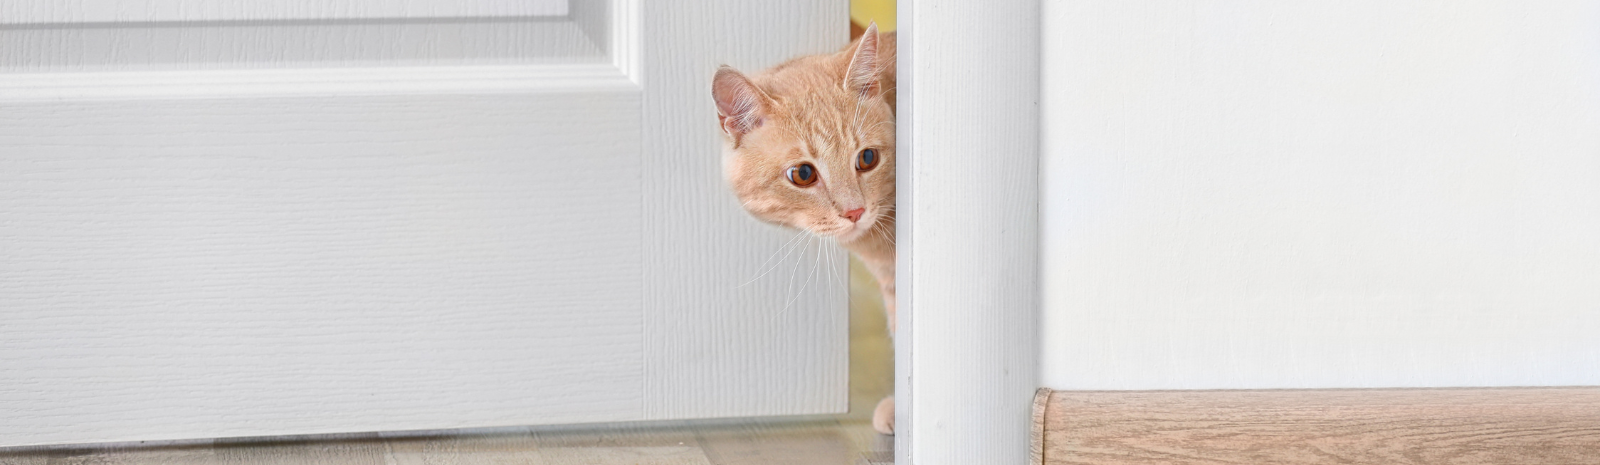 A cat peeking out of a door